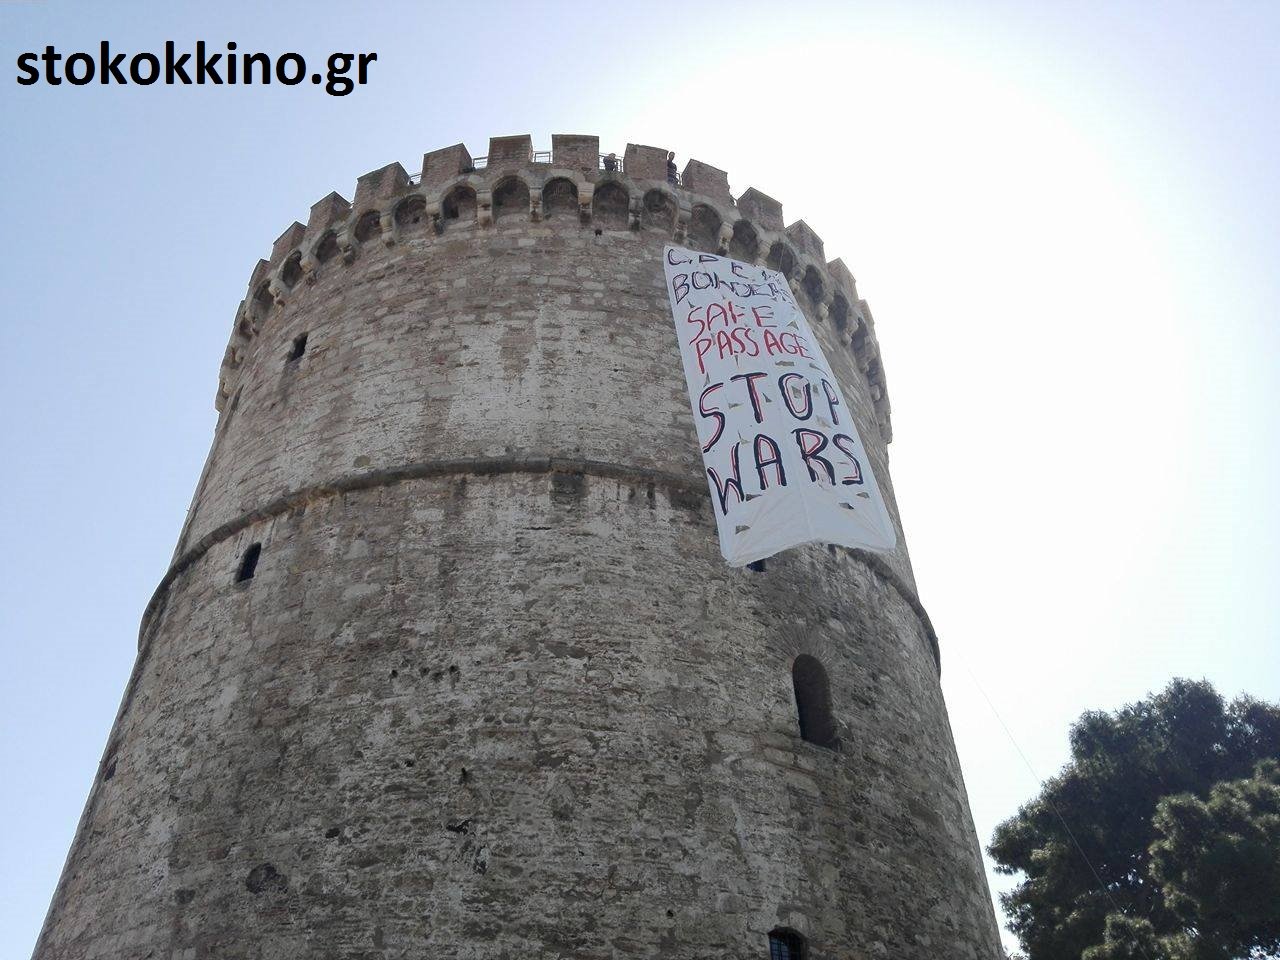 Πανό τύλιξε τον Λευκό Πύργο: «Ανοιχτά σύνορα- Σταματήστε τον πόλεμο»